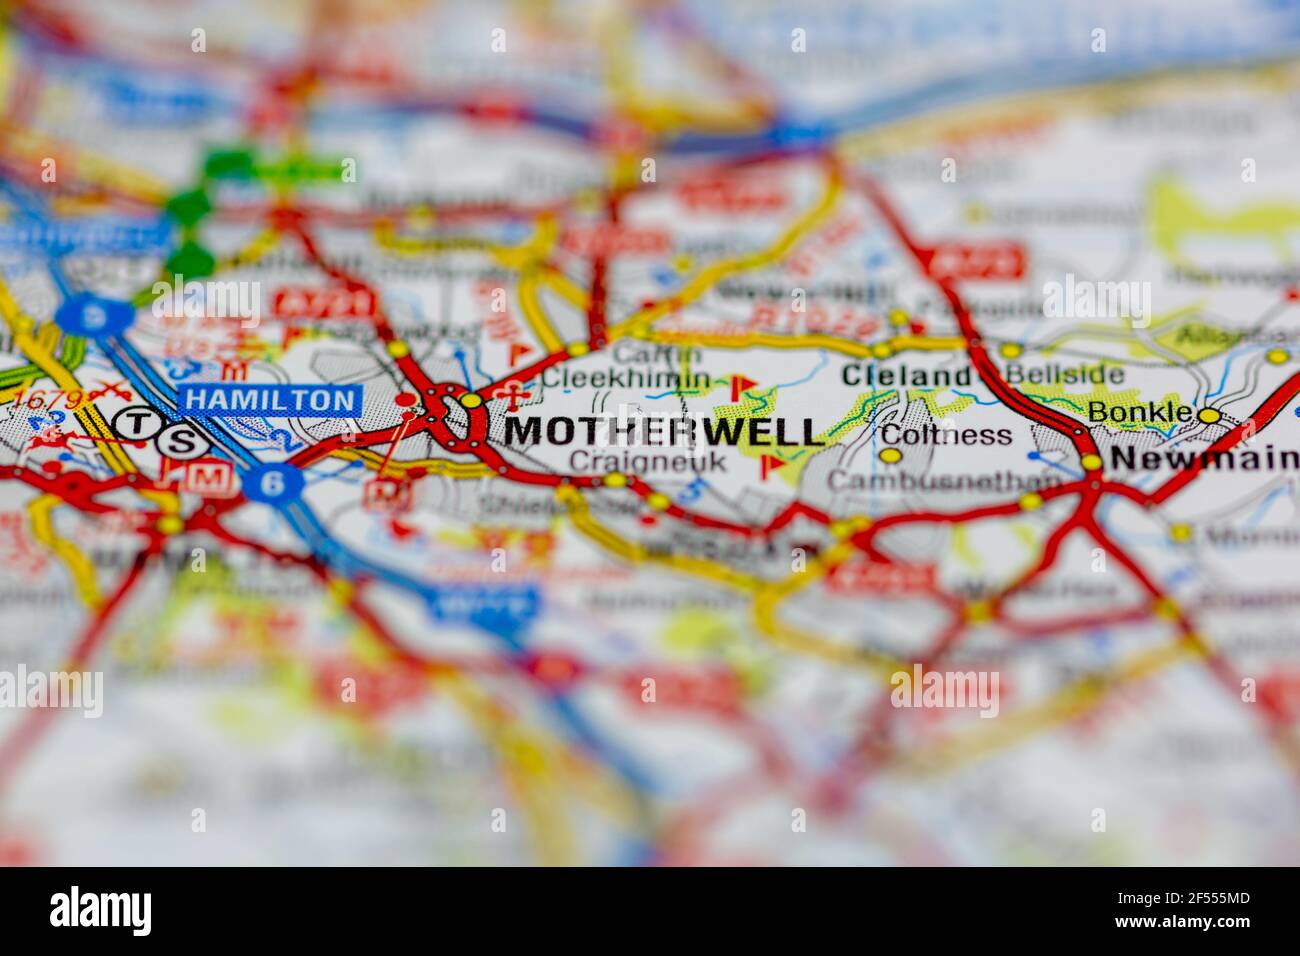 Motherwell se muestra en un mapa geográfico o mapa de carreteras Foto de stock